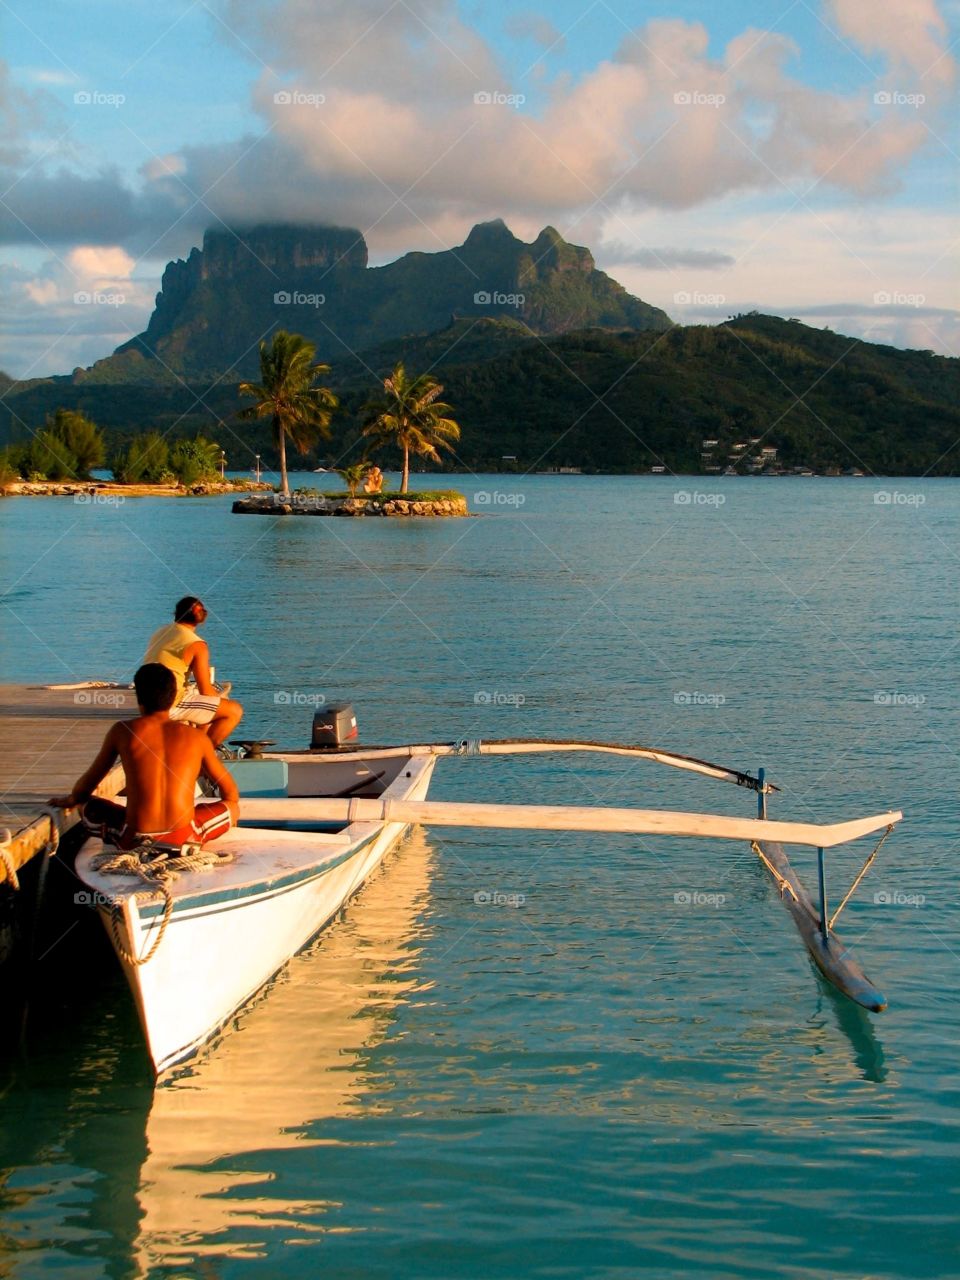 Bora Bora. Outrigger canoe in Bora Bora, French Polynesia